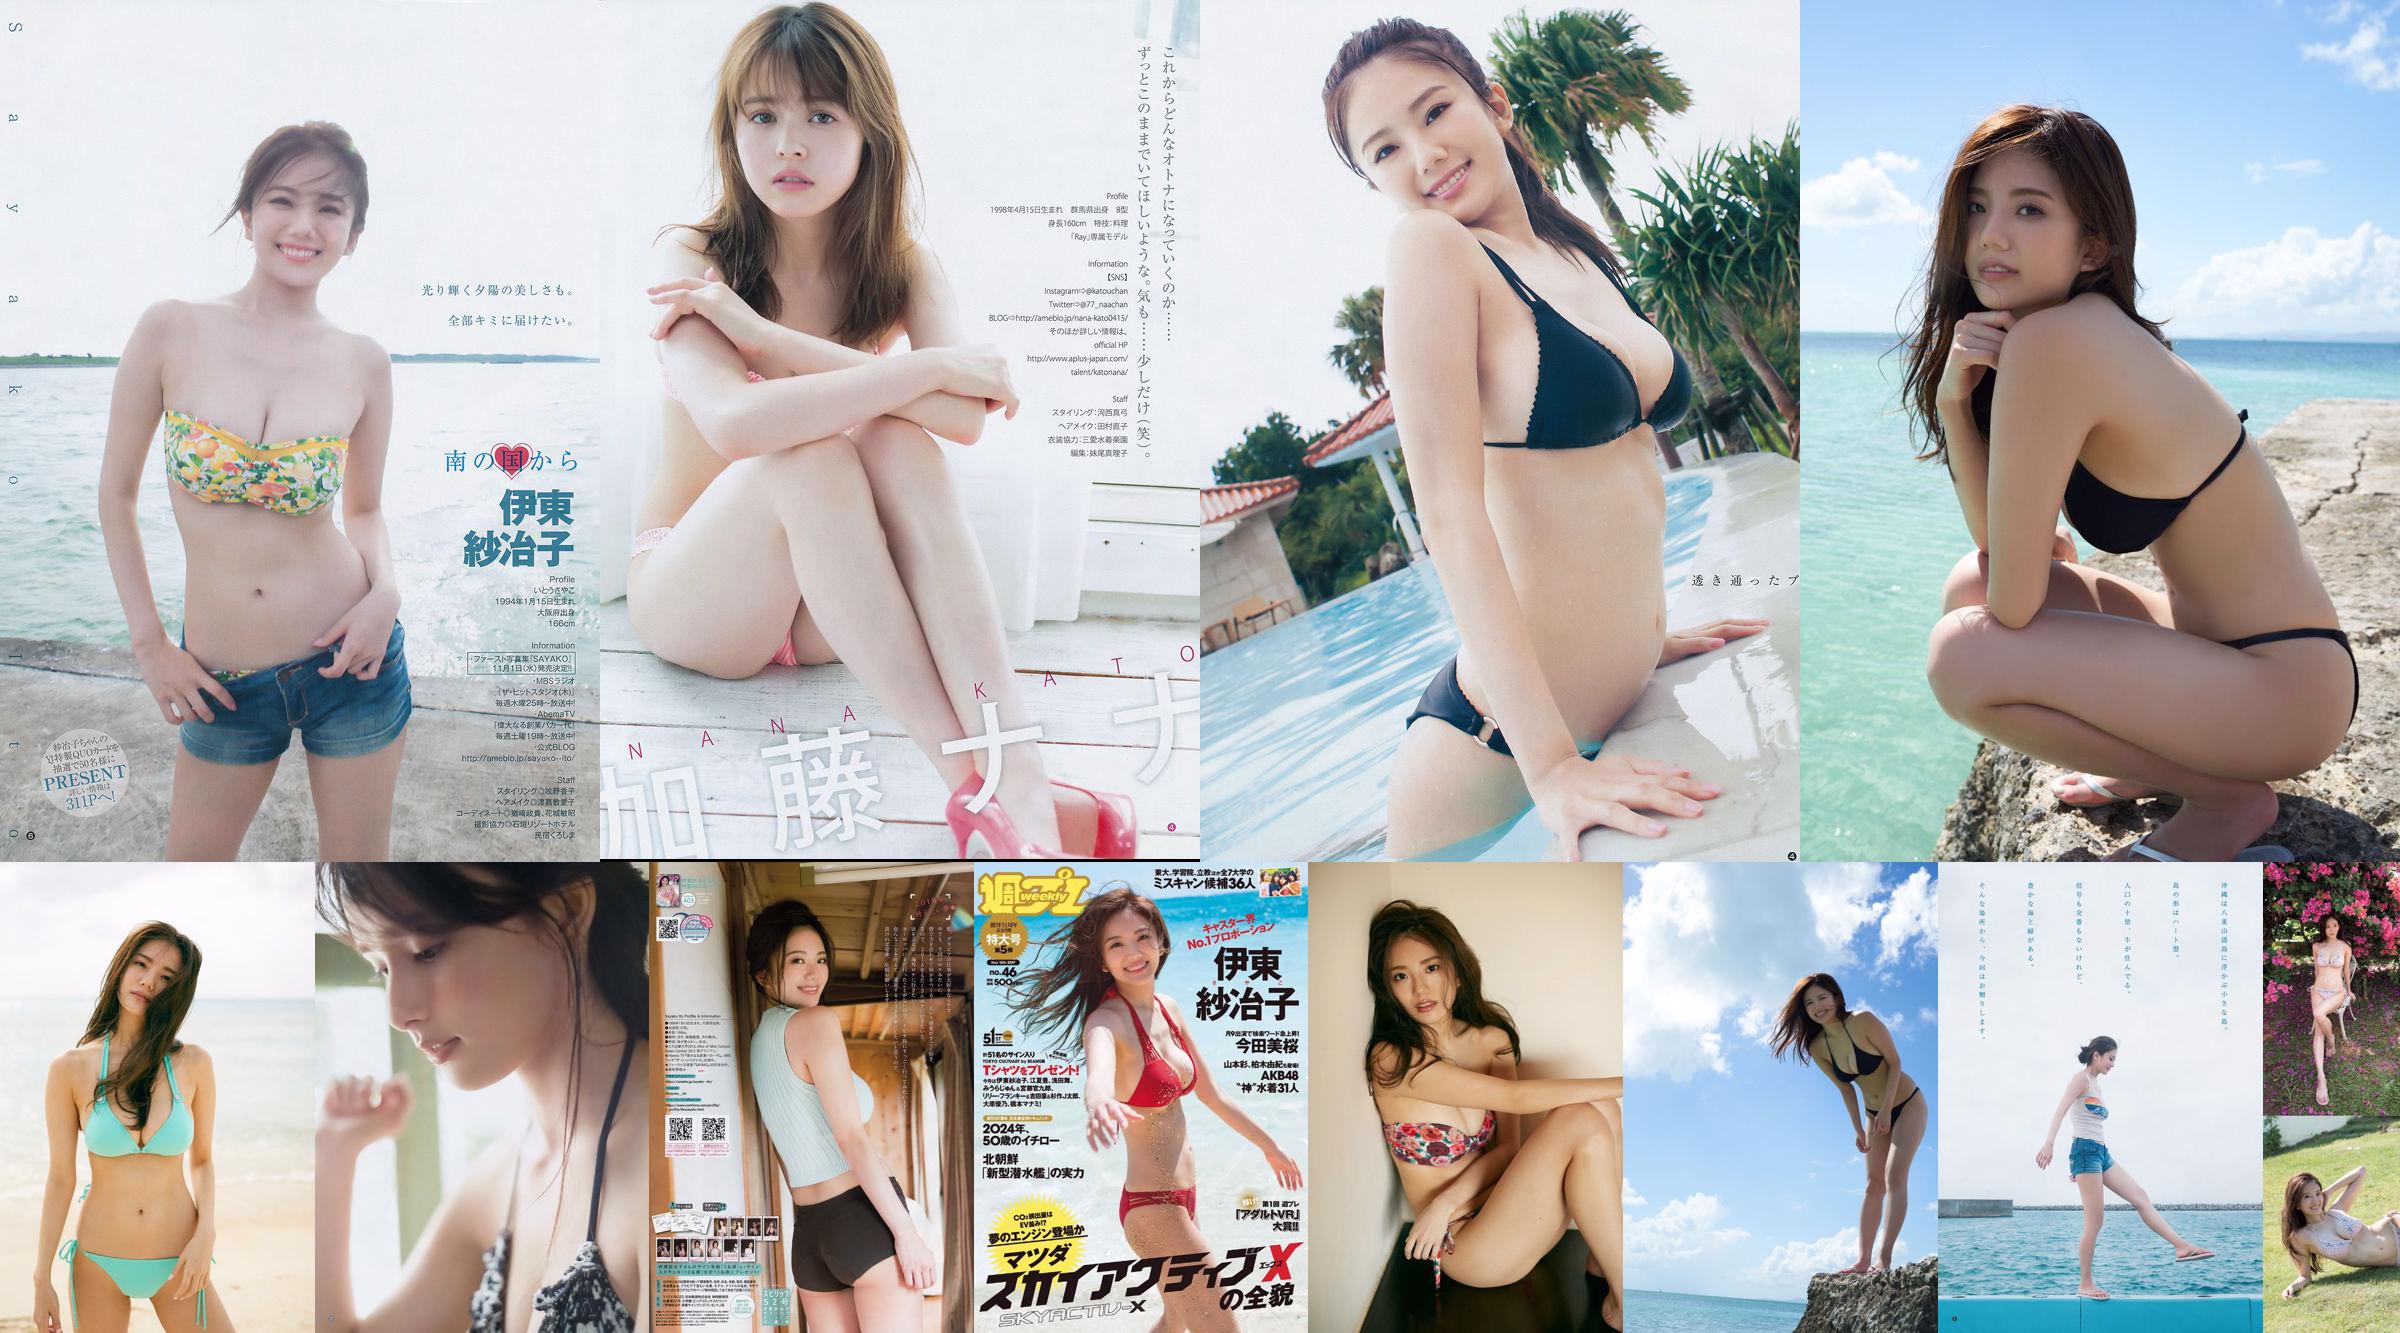 Ito Sayeko, Mima Reiko, Sugimoto Yumi, Sato Reina, Yoshiki りさ Toyama Akiko, Naninao [Weekly Playboy] 2016 No.36 Photo Magazine No.95e984 Página 4